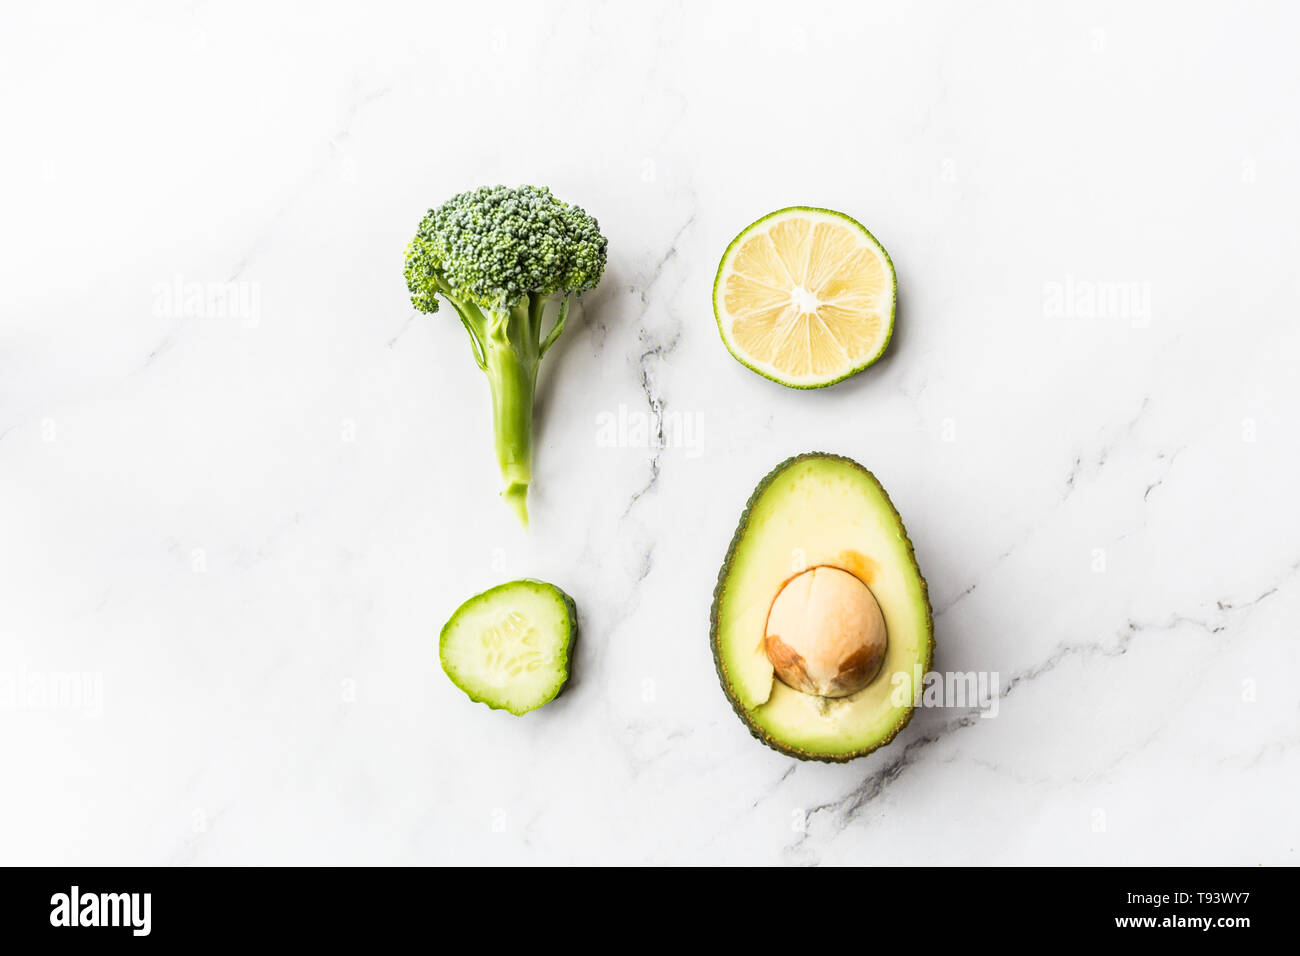 Frische Avocado, Kalk, Brokkoli, grüne Erbsen, Gurken, grüner Pfeffer.  Flach. Essen Konzept. Grünes Gemüse liegen auf weißem Hintergrund  Stockfotografie - Alamy